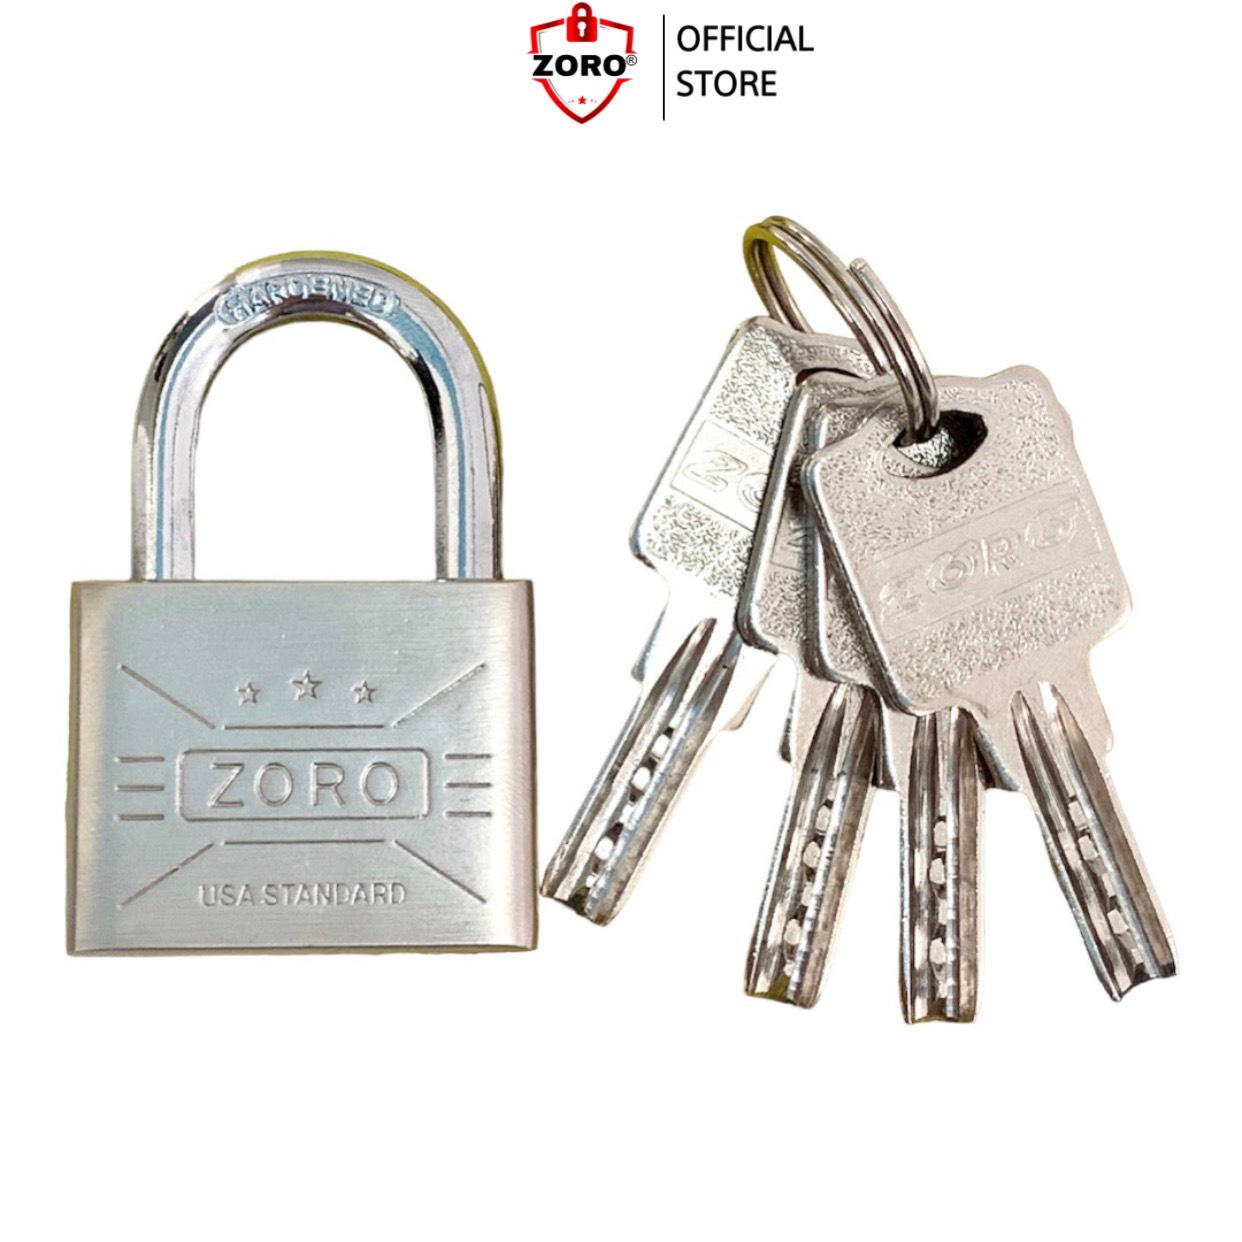 Ổ khóa ZORO 4 phân chìa muỗng thích hợp khóa tủ, phòng